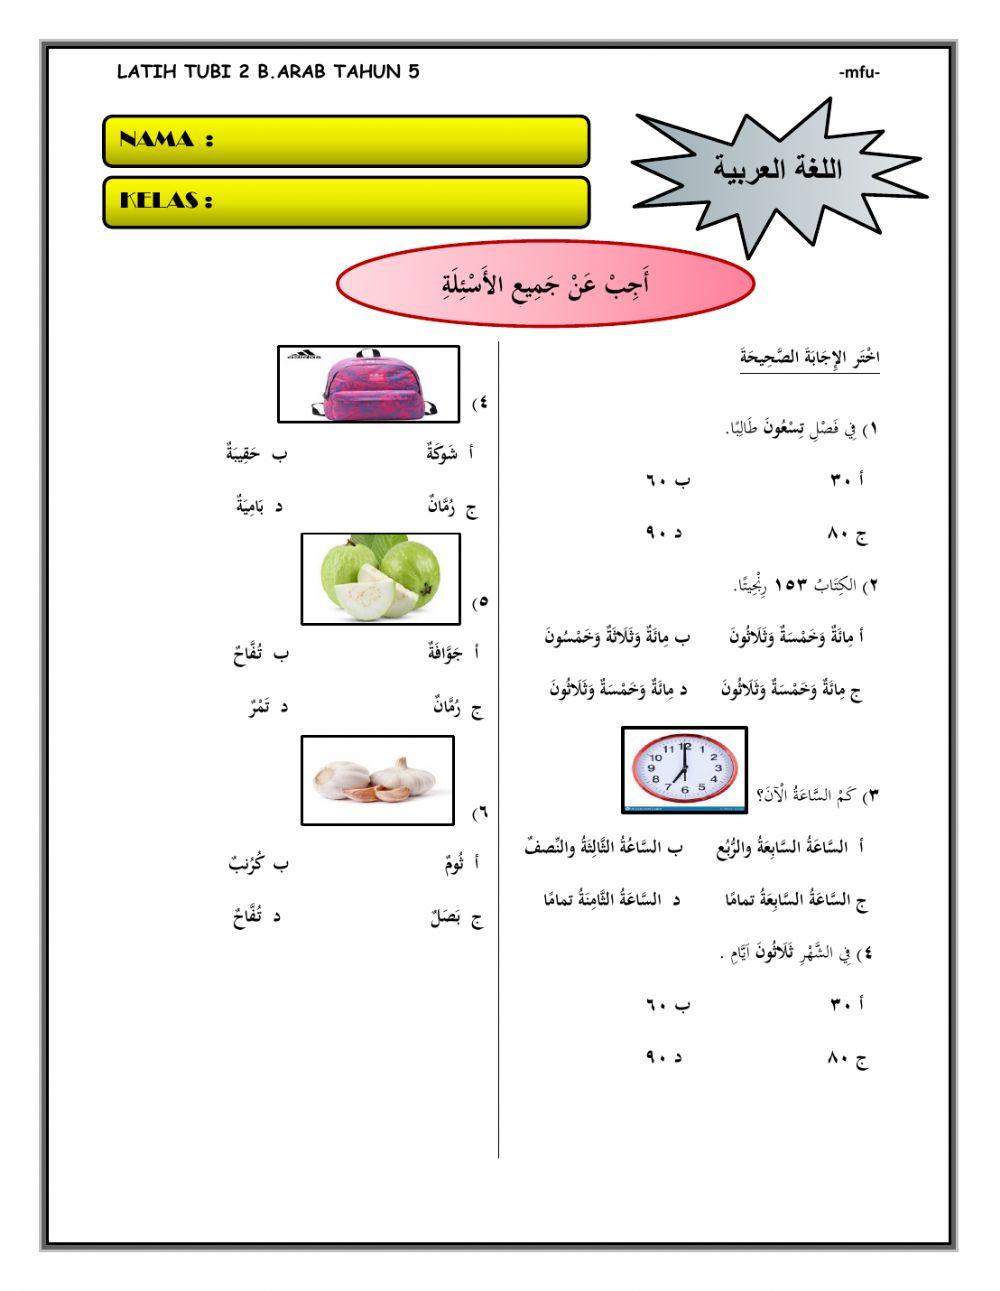 Latih tubi 2 bahasa arab tahun 5